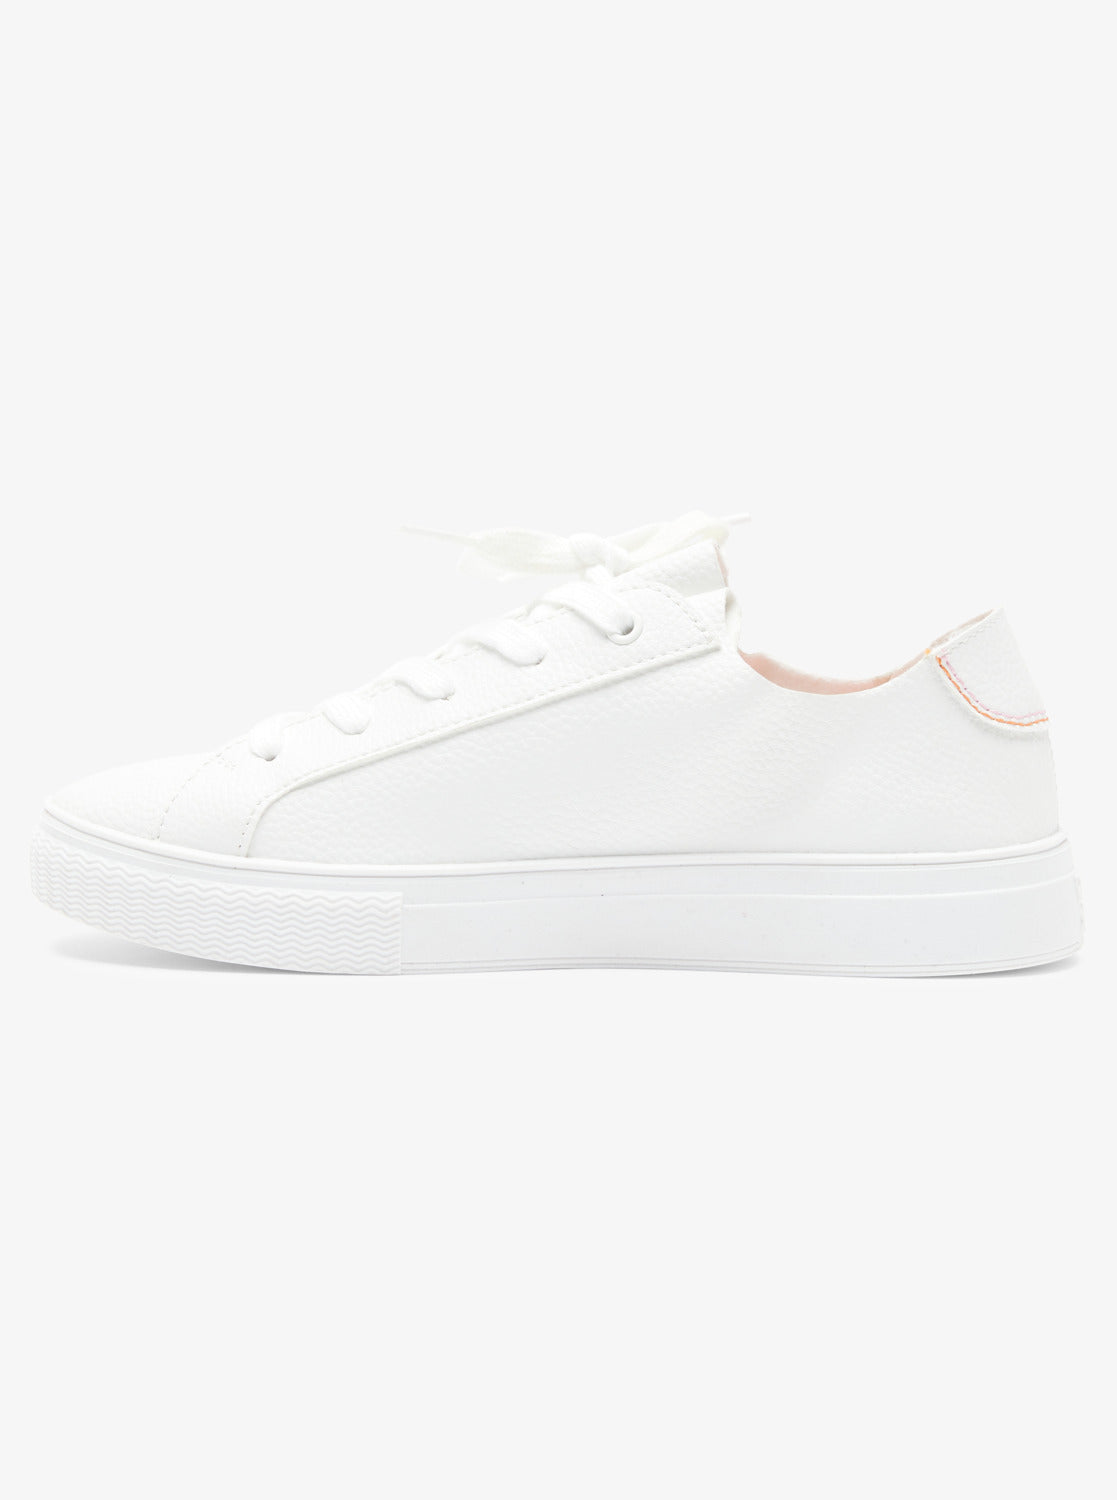 Coastal Cruisin Shoes - White